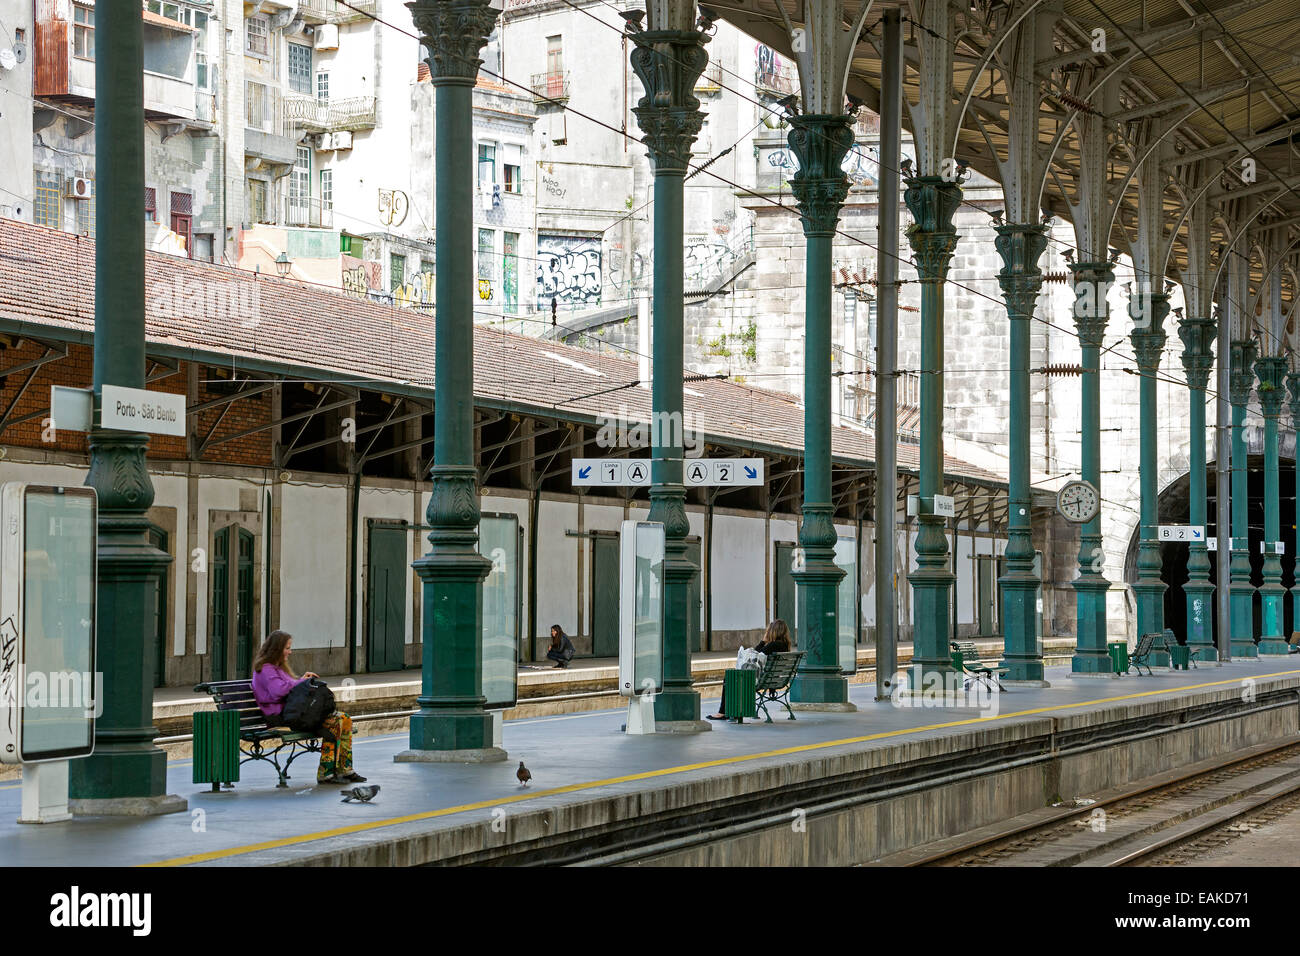 Sao Bento Railway Station, Porto, District of Porto, Portugal Stock Photo